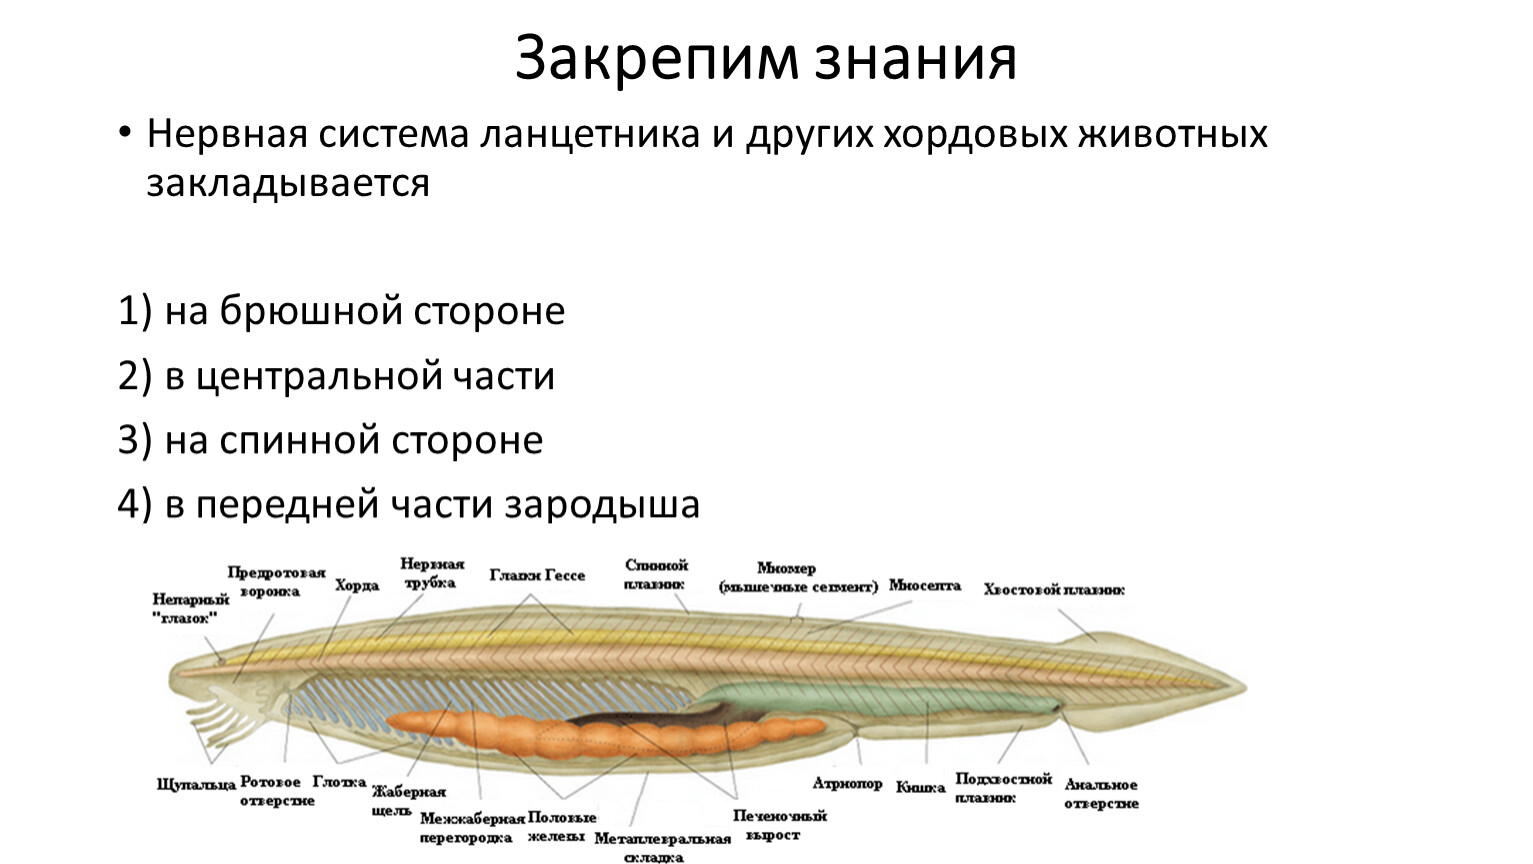 Класс рыбы ланцетники